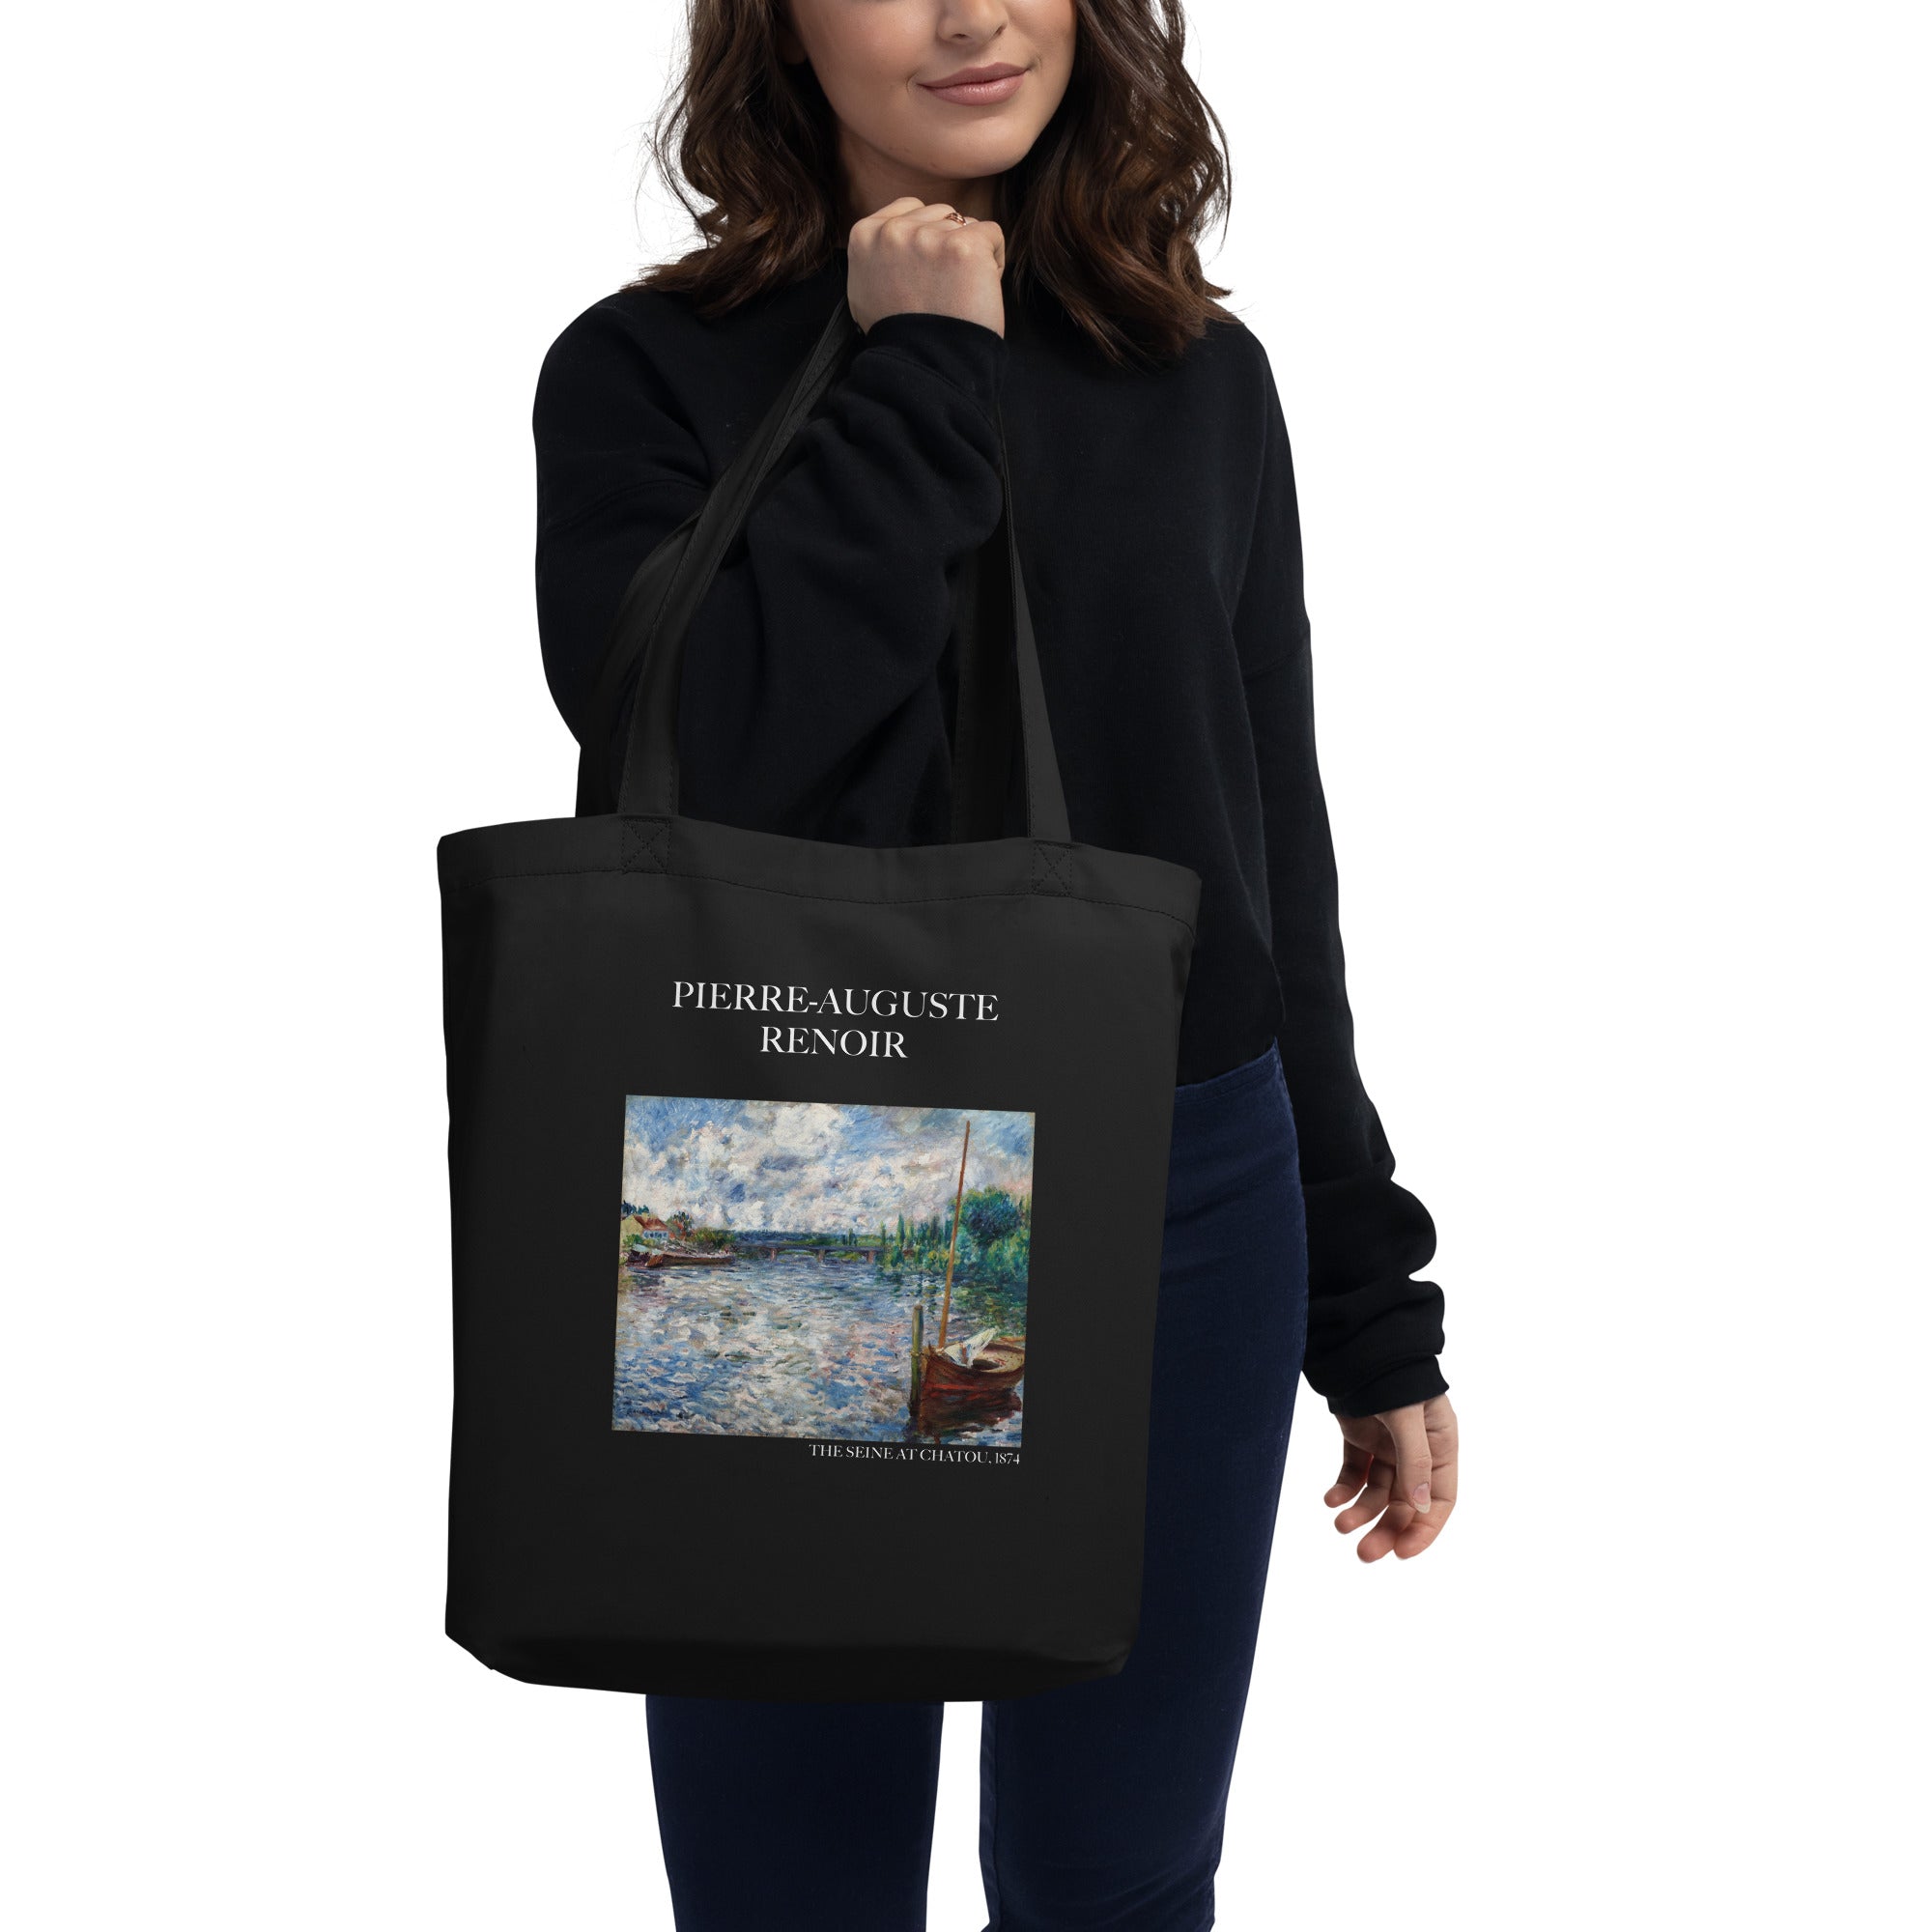 Pierre-Auguste Renoir 'Die Seine bei Chatou' Berühmtes Gemälde Tragetasche | Umweltfreundliche Kunst Tragetasche